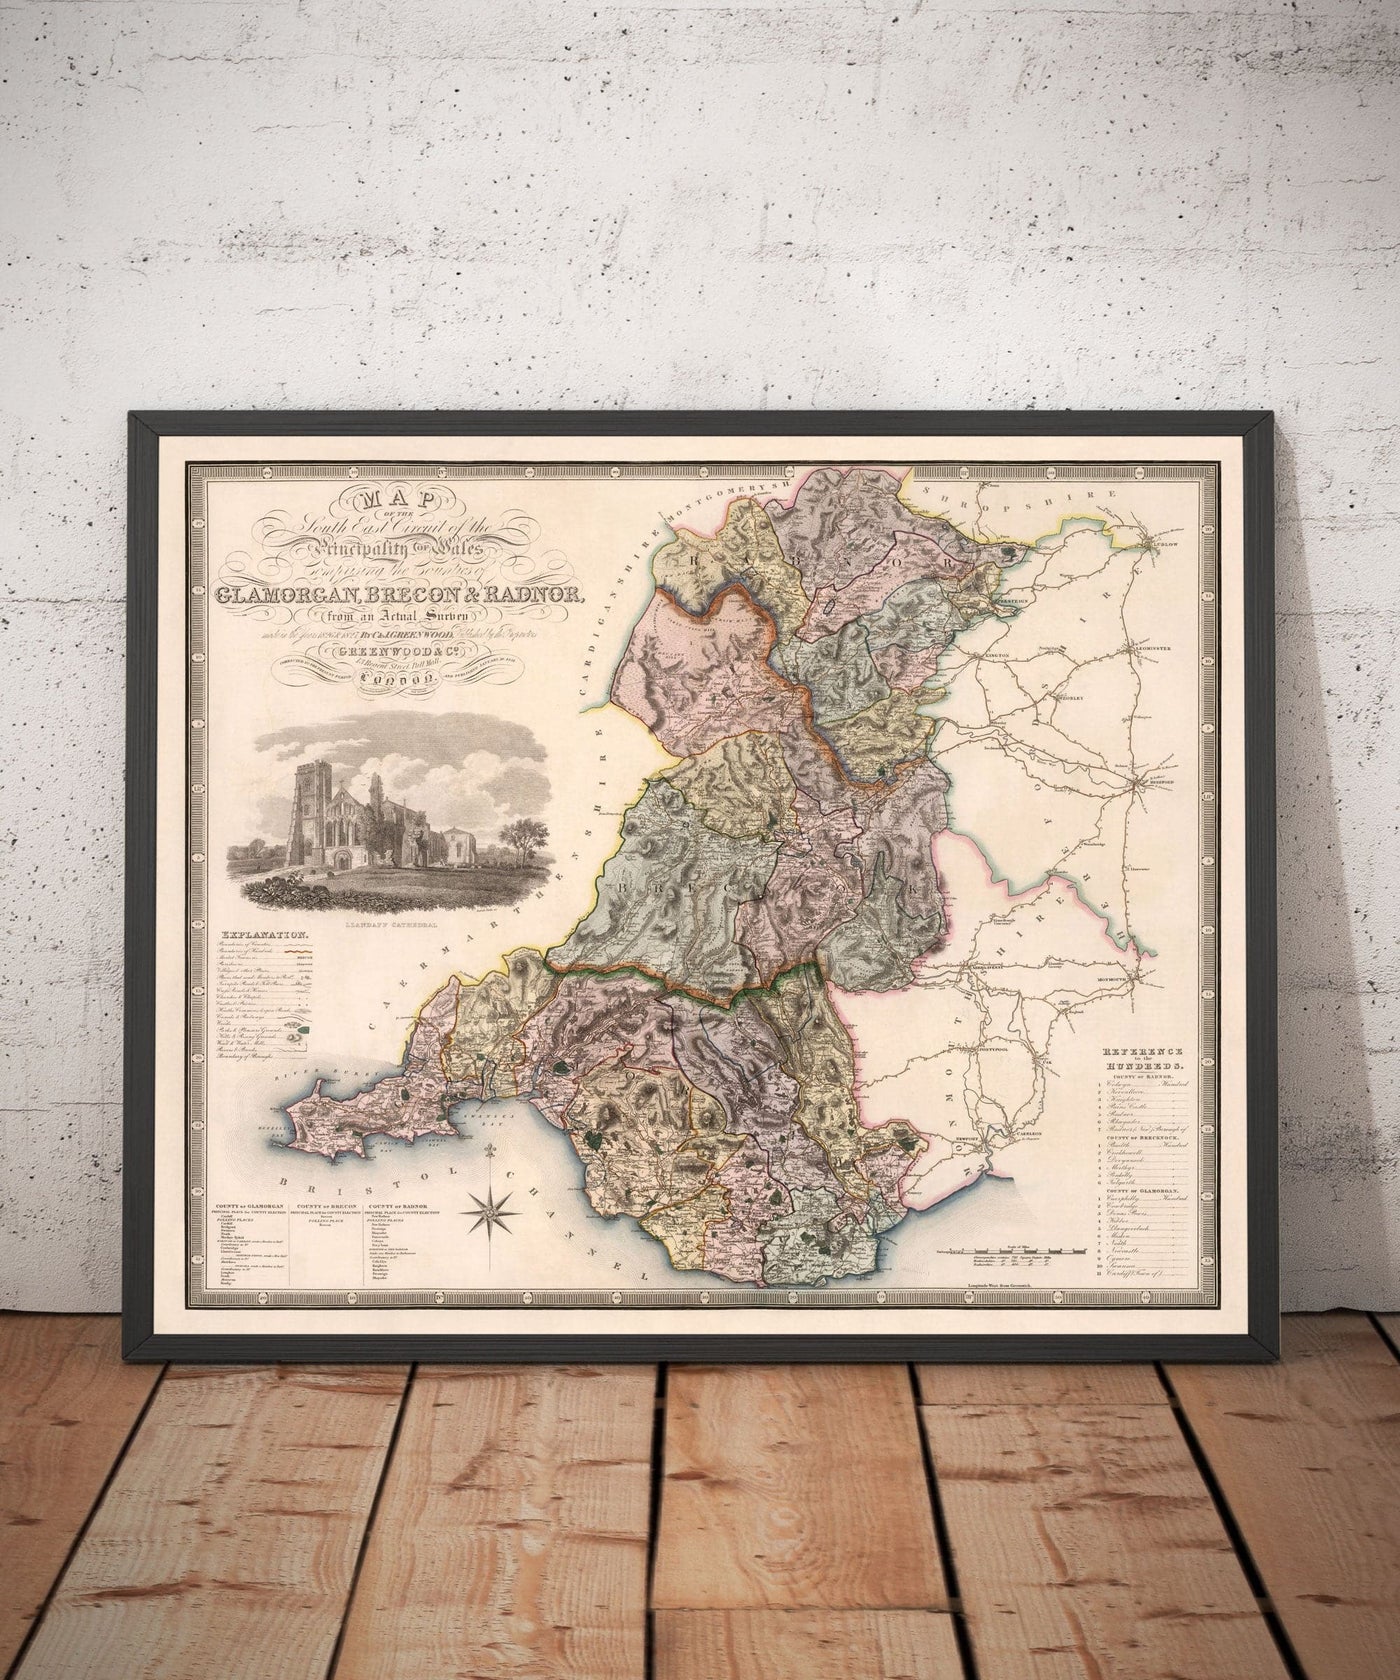 Alte Karte von Südwales, 1829 von Greenwood & Co. - Glamorgan, Cardiff, Brecon, Swansea